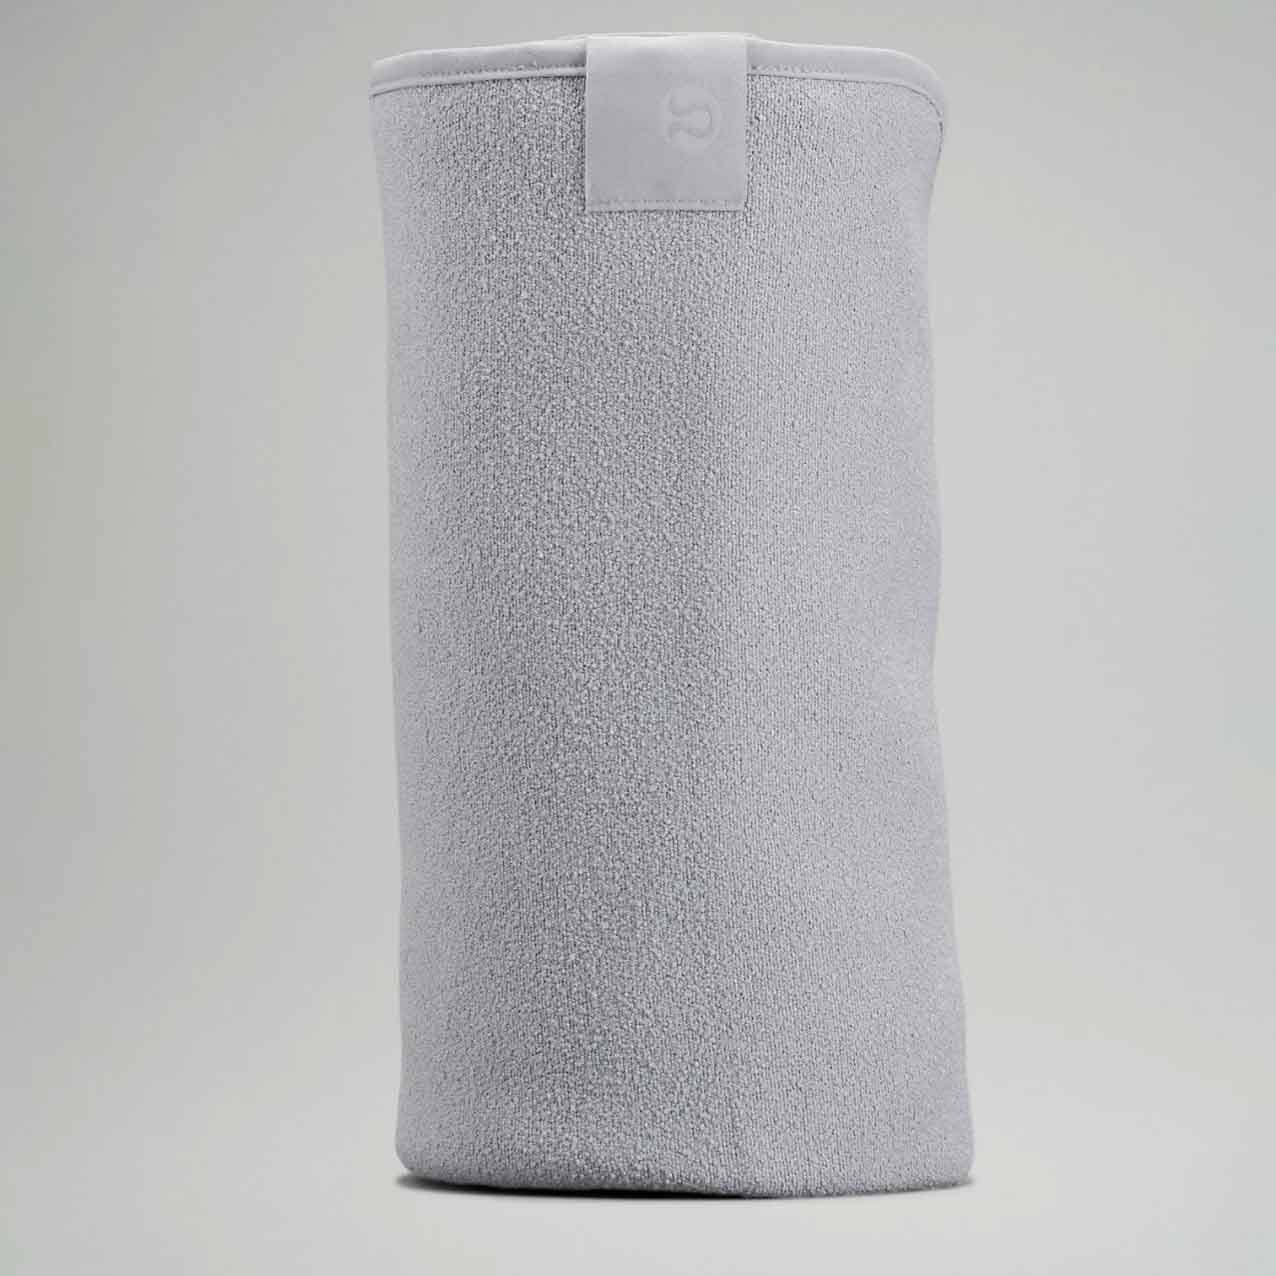 Grey folded towel mat